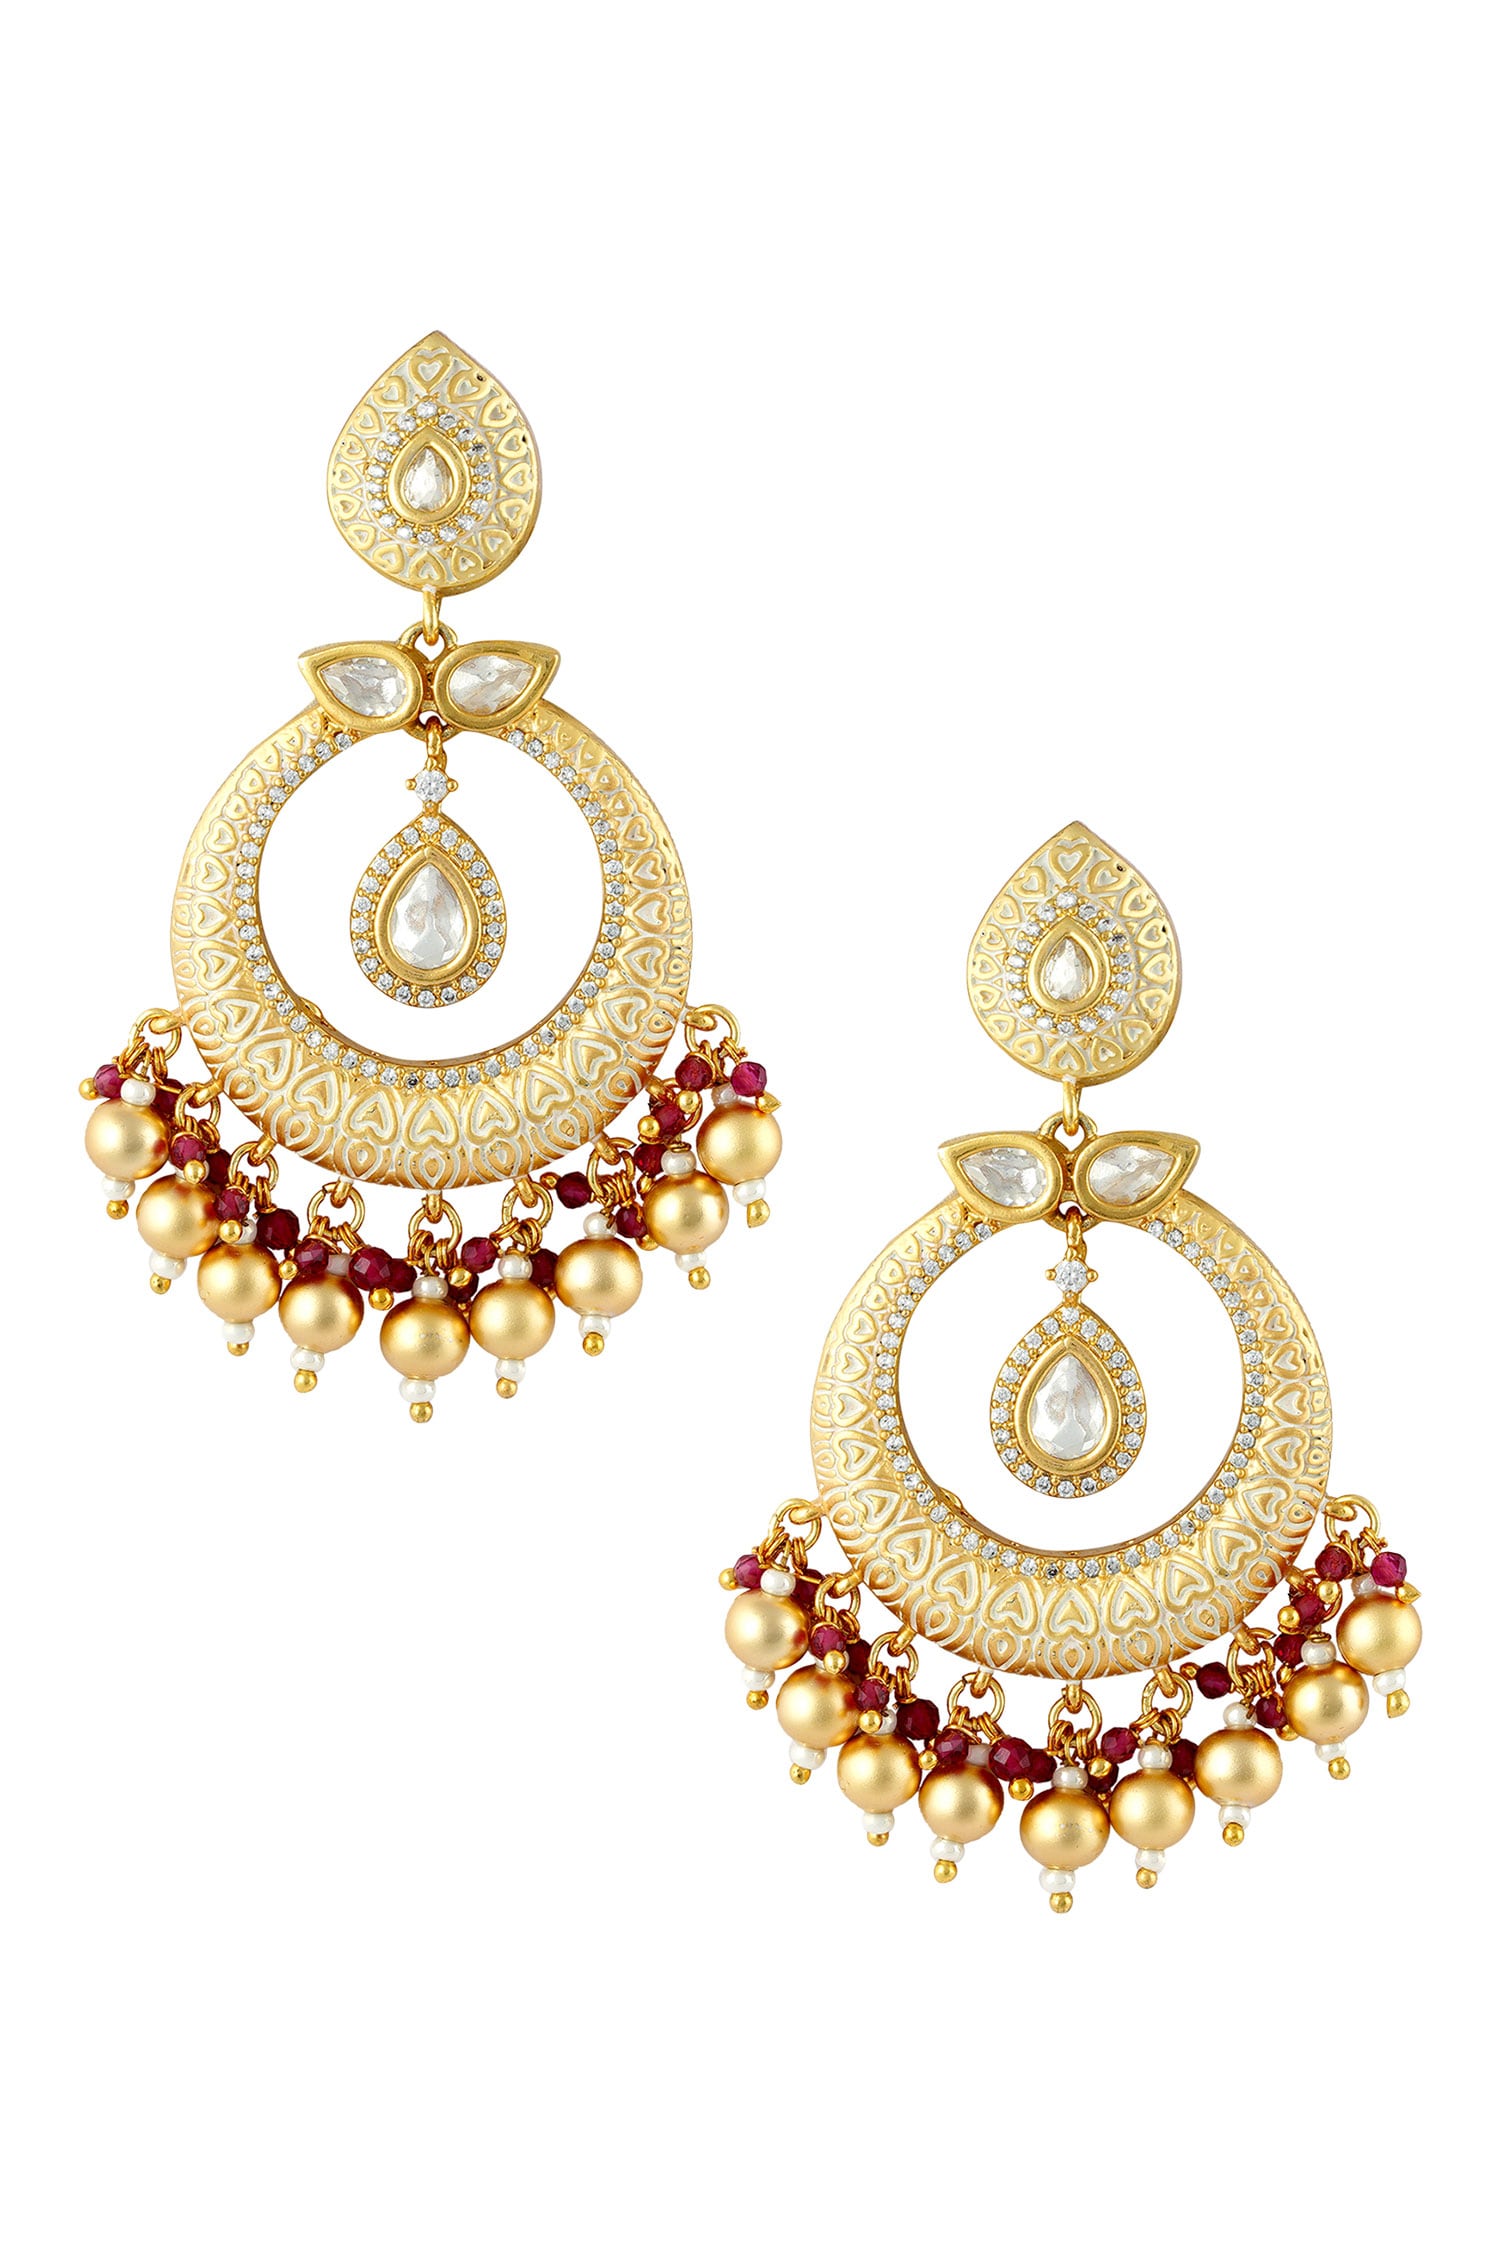 Buy Estella Kundan Meenakari Pendant Choker Set by Anayah Jewellery at ...